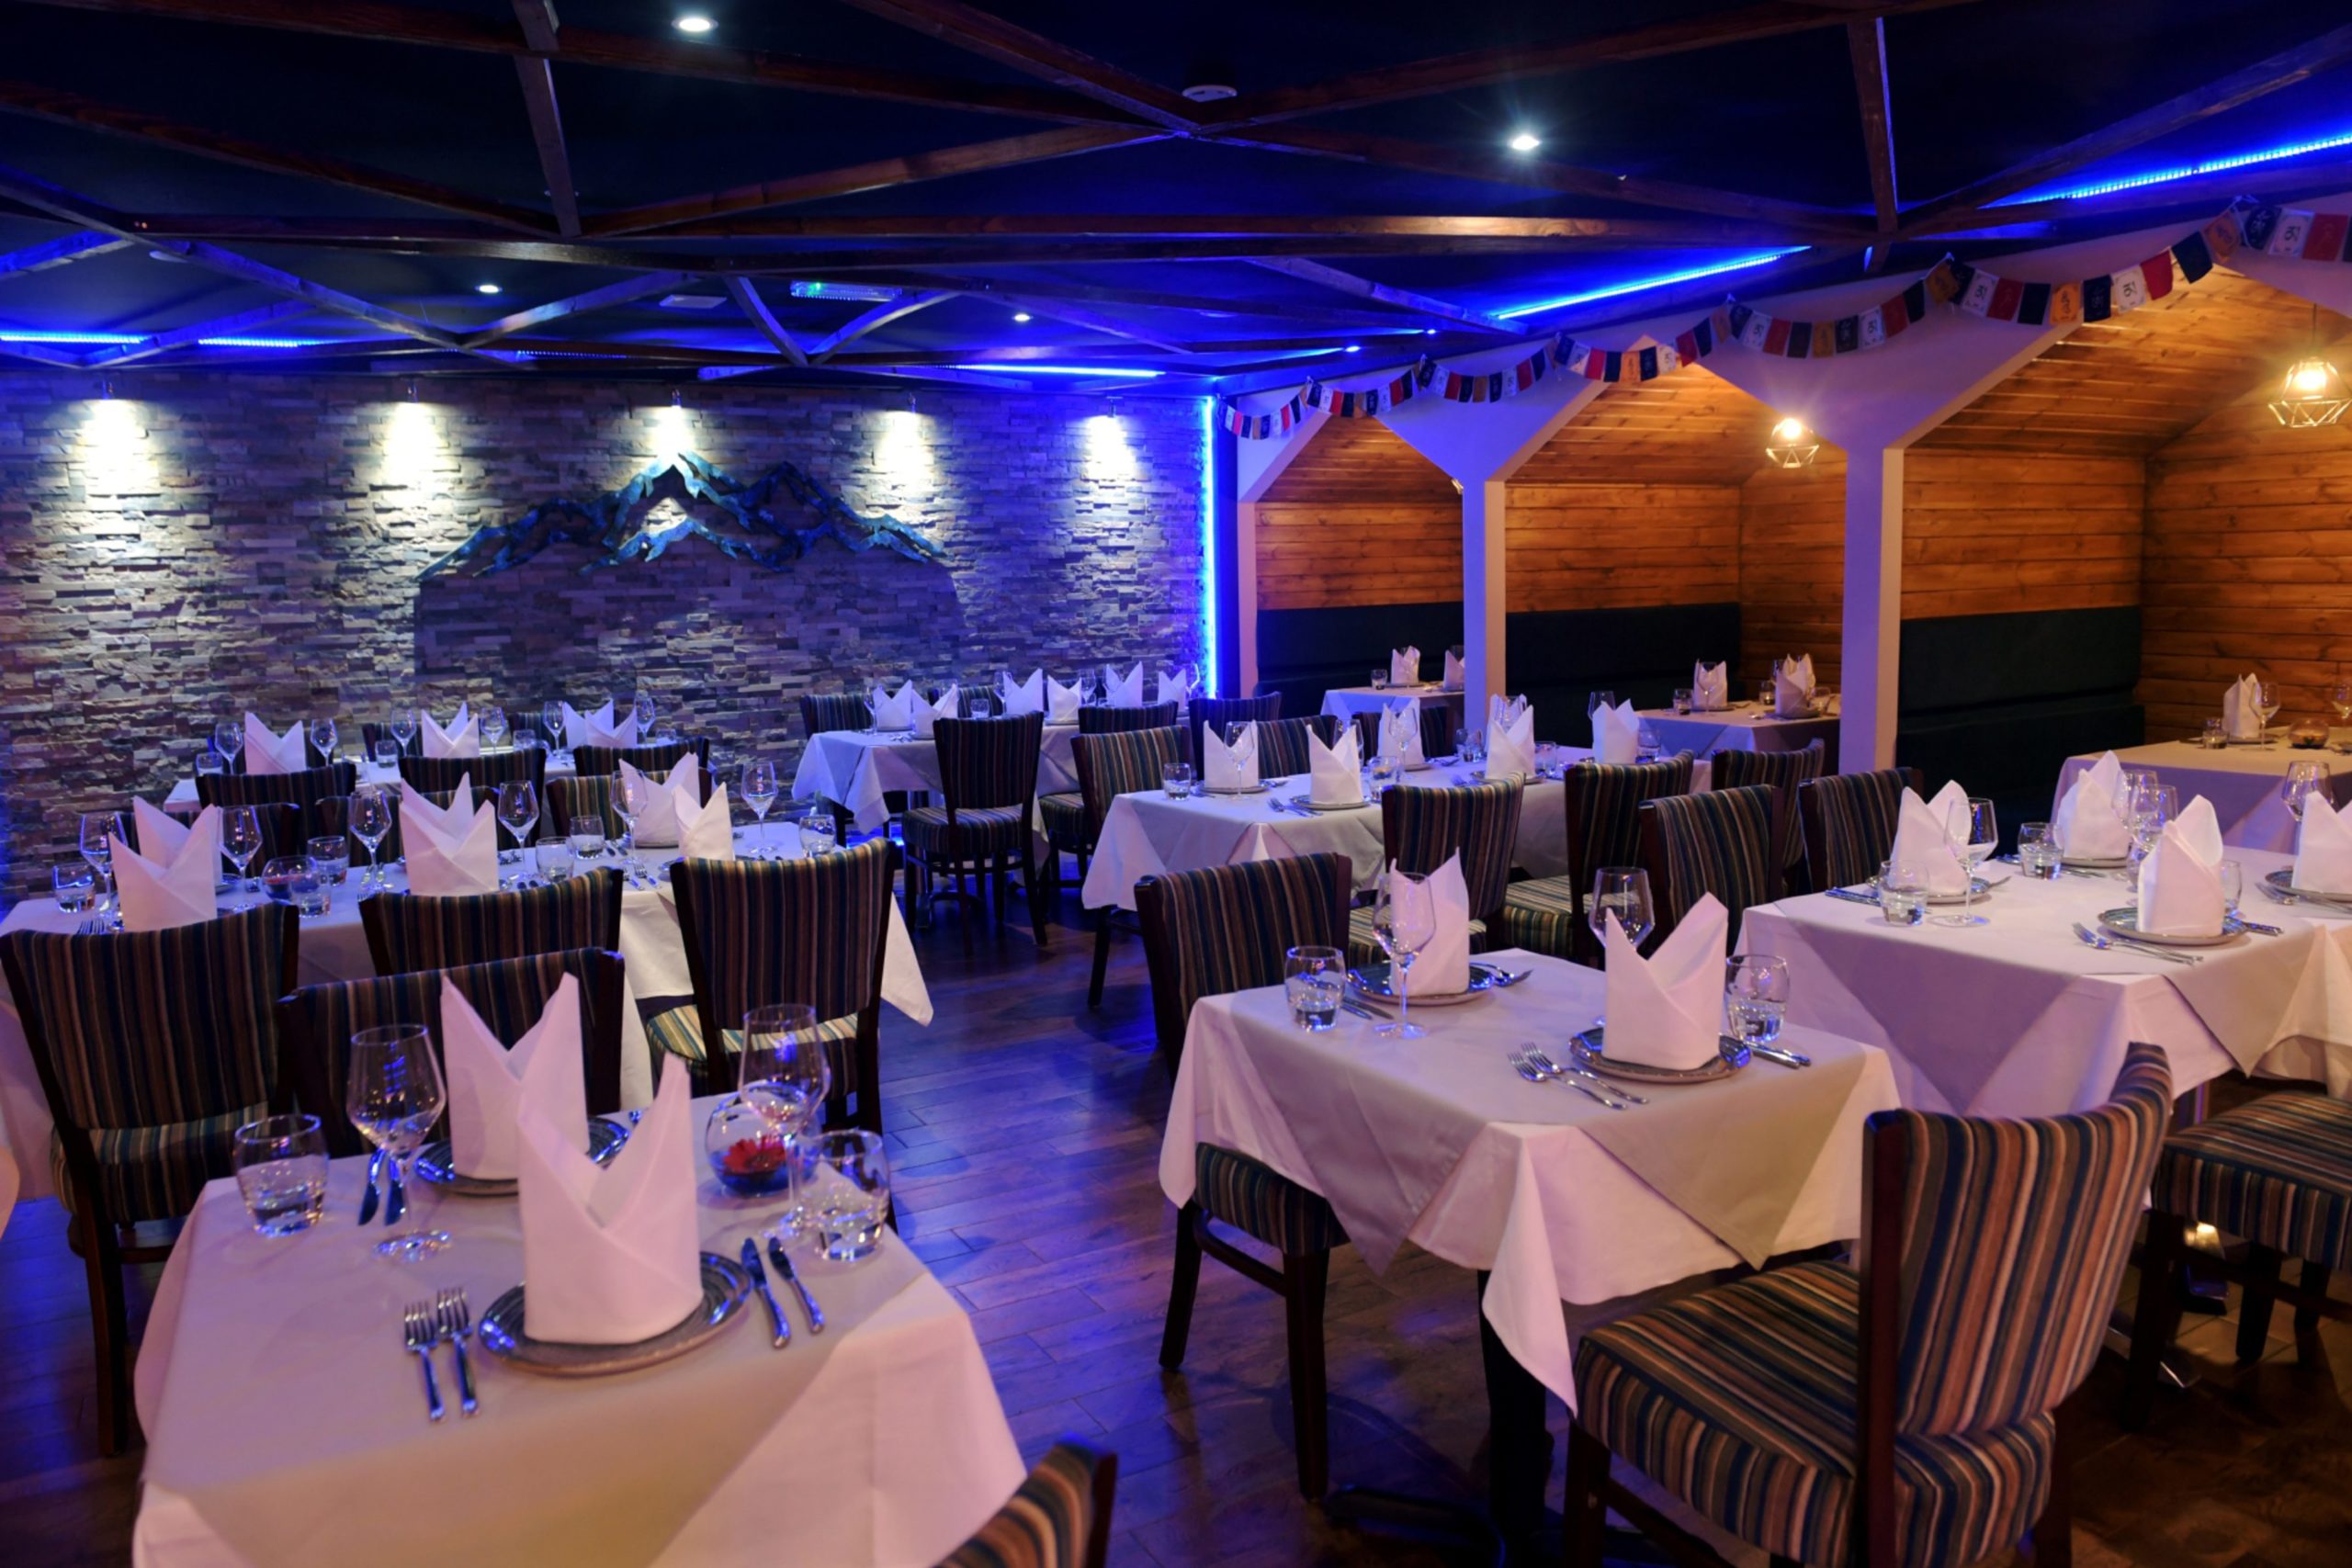 Tables set for diners in Mount Everest restaurant in Blackburn